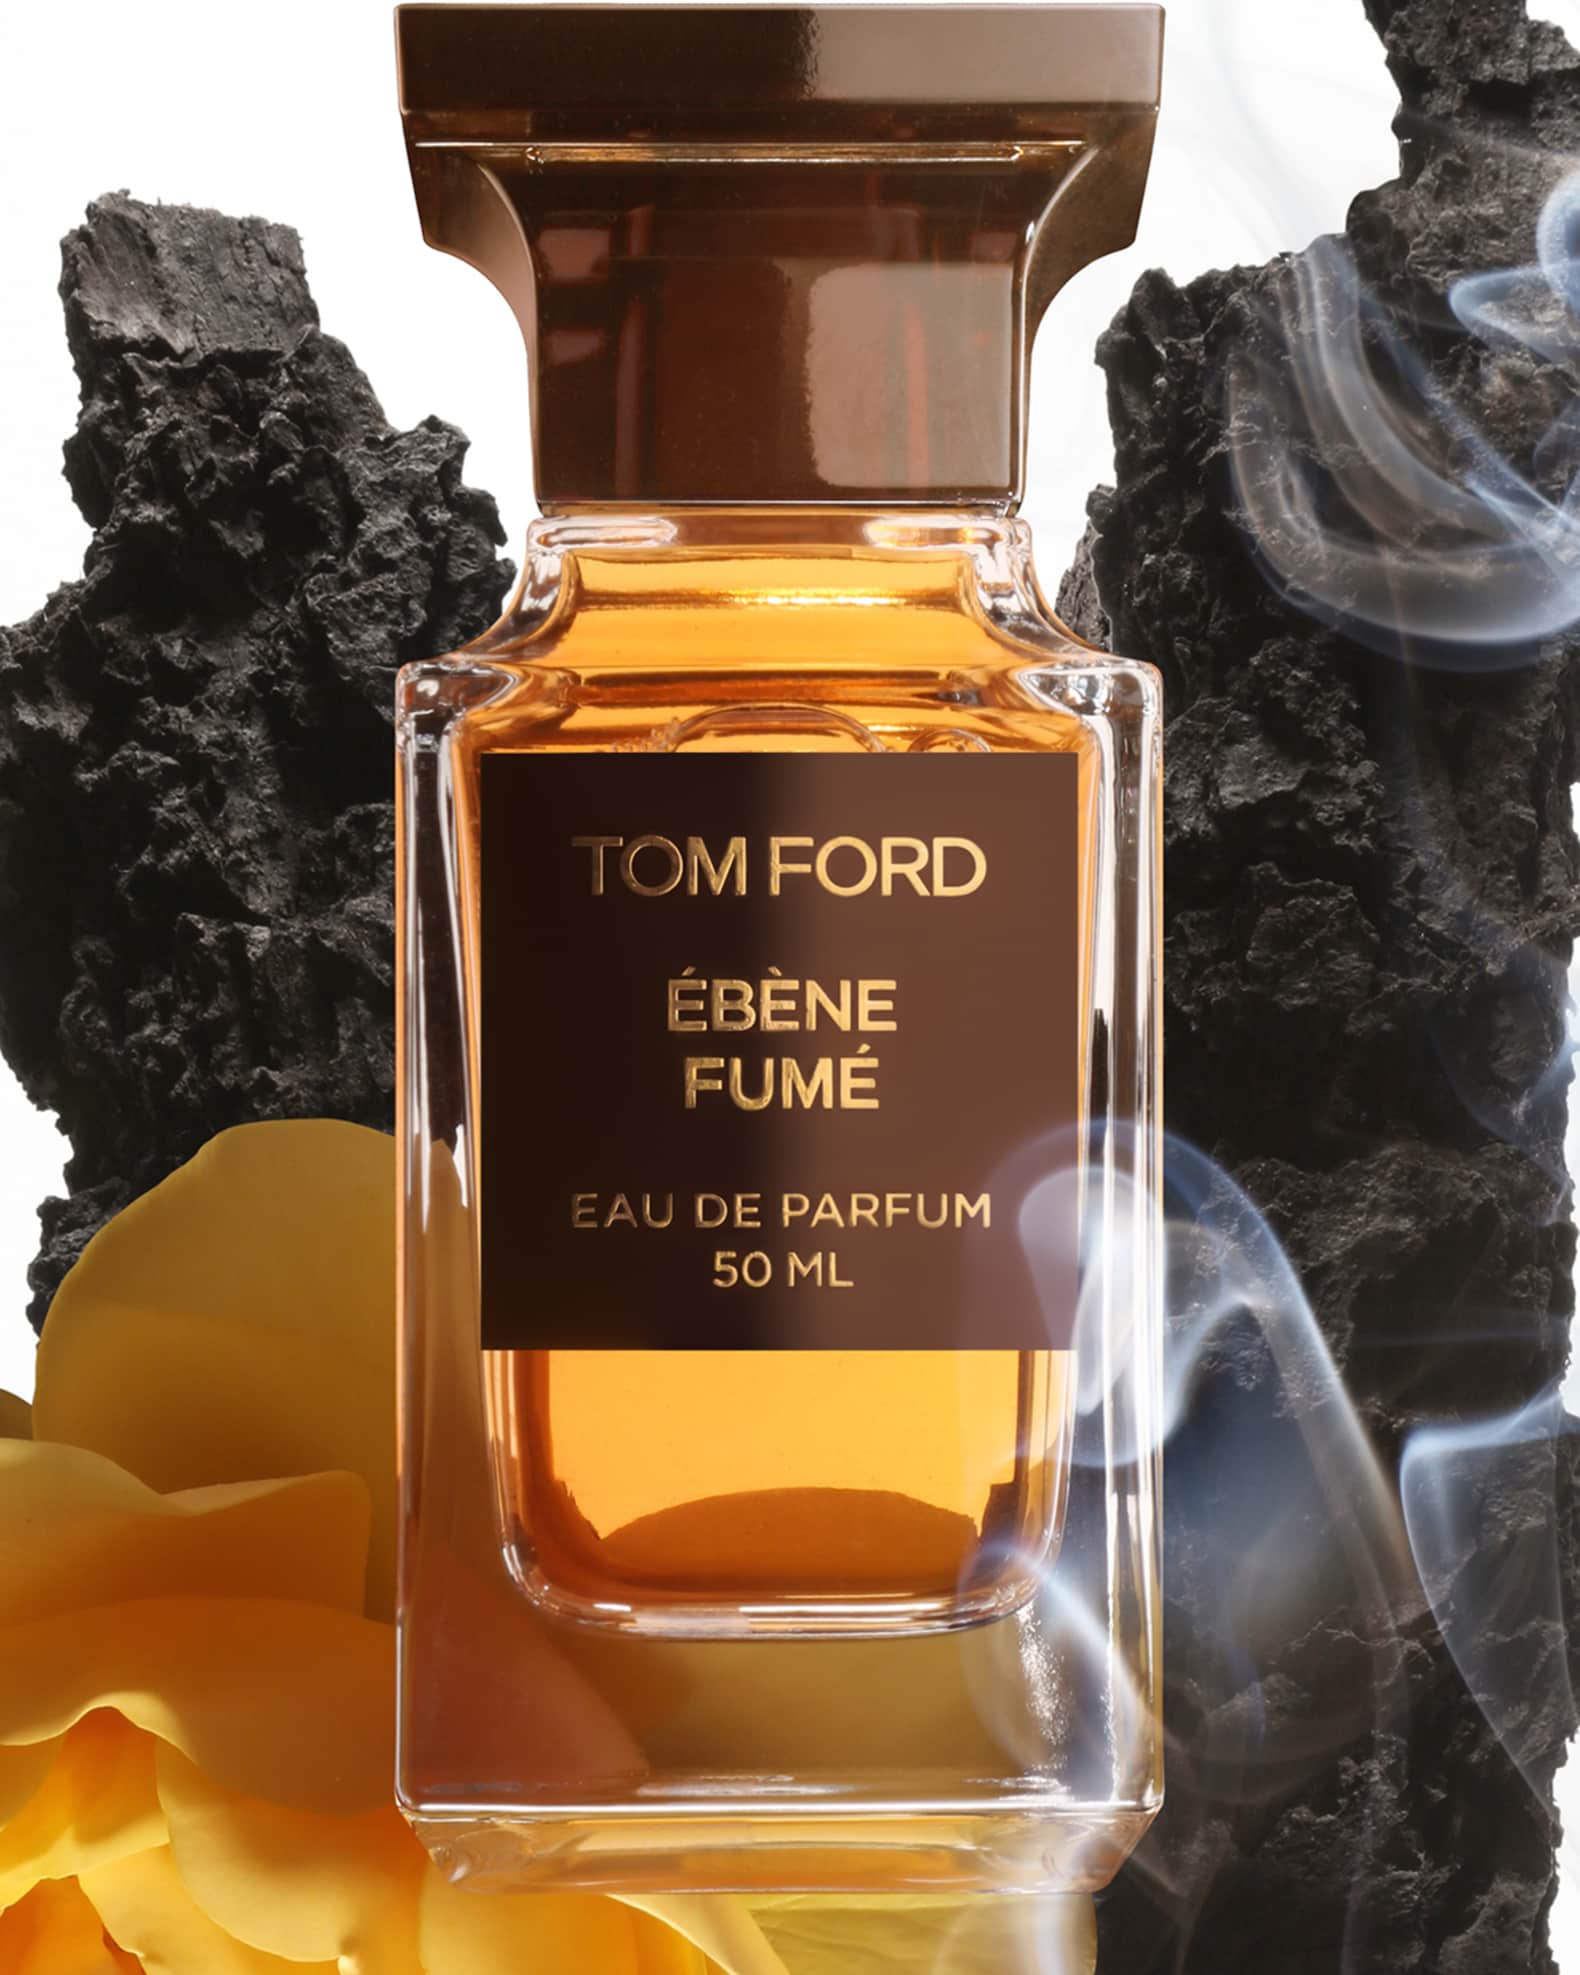 TOM FORD Ébène Fumé Eau de Parfum Fragrance 250ml Decanter | Neiman Marcus